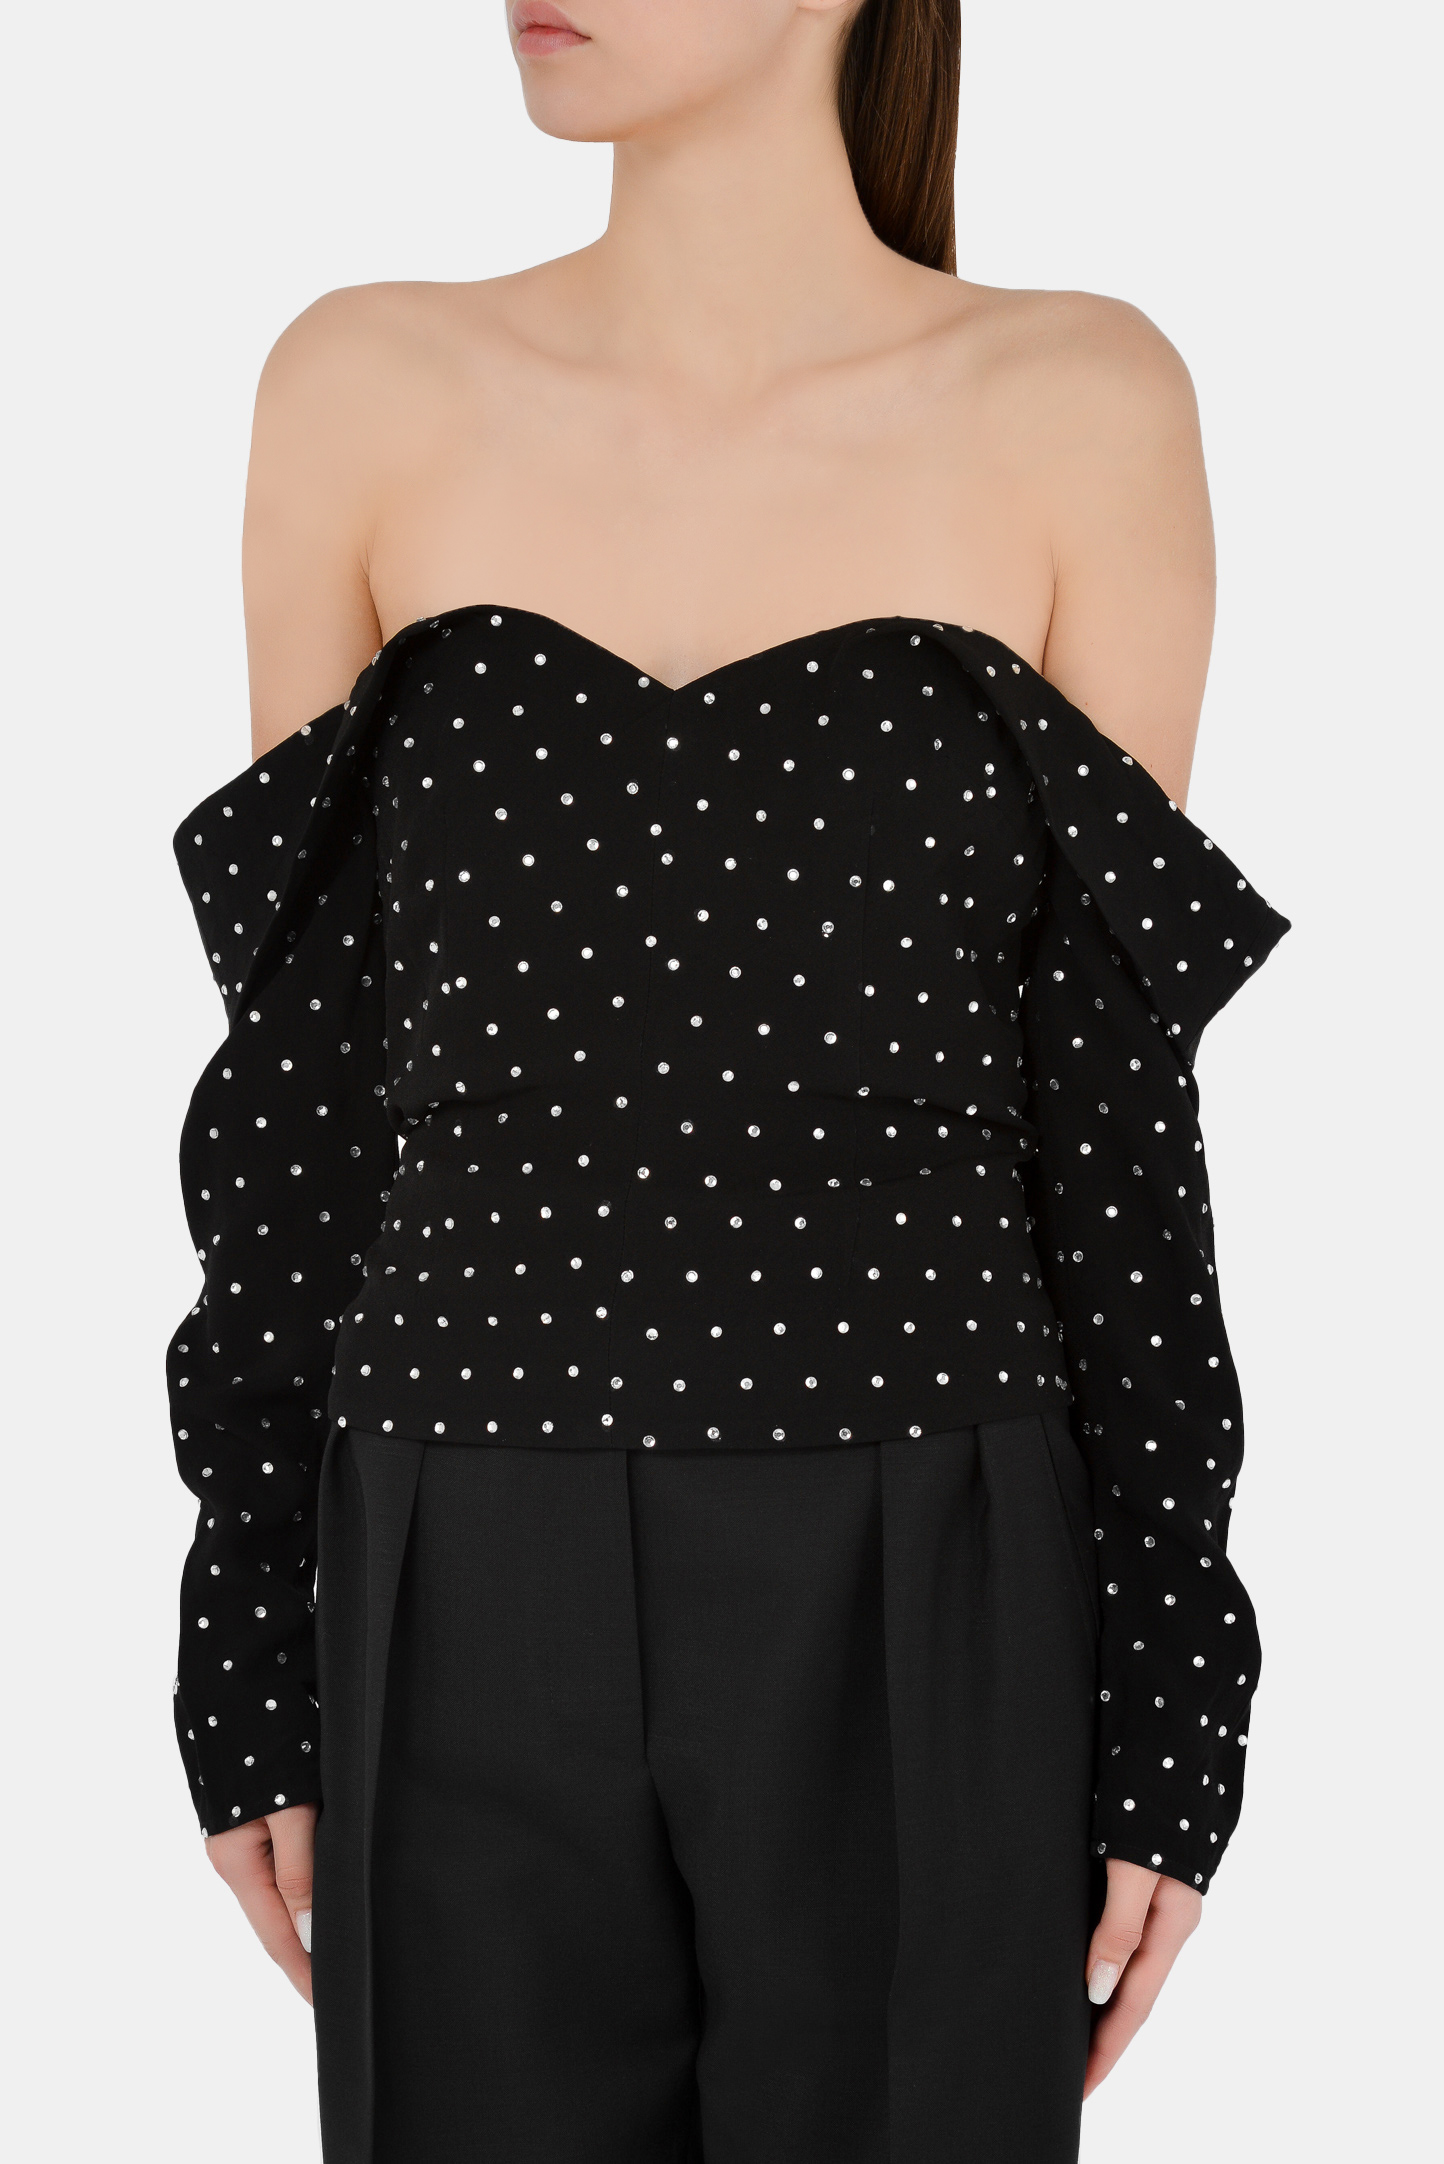 Блуза SELF PORTRAIT RS21-096T, цвет: Черный, Женский